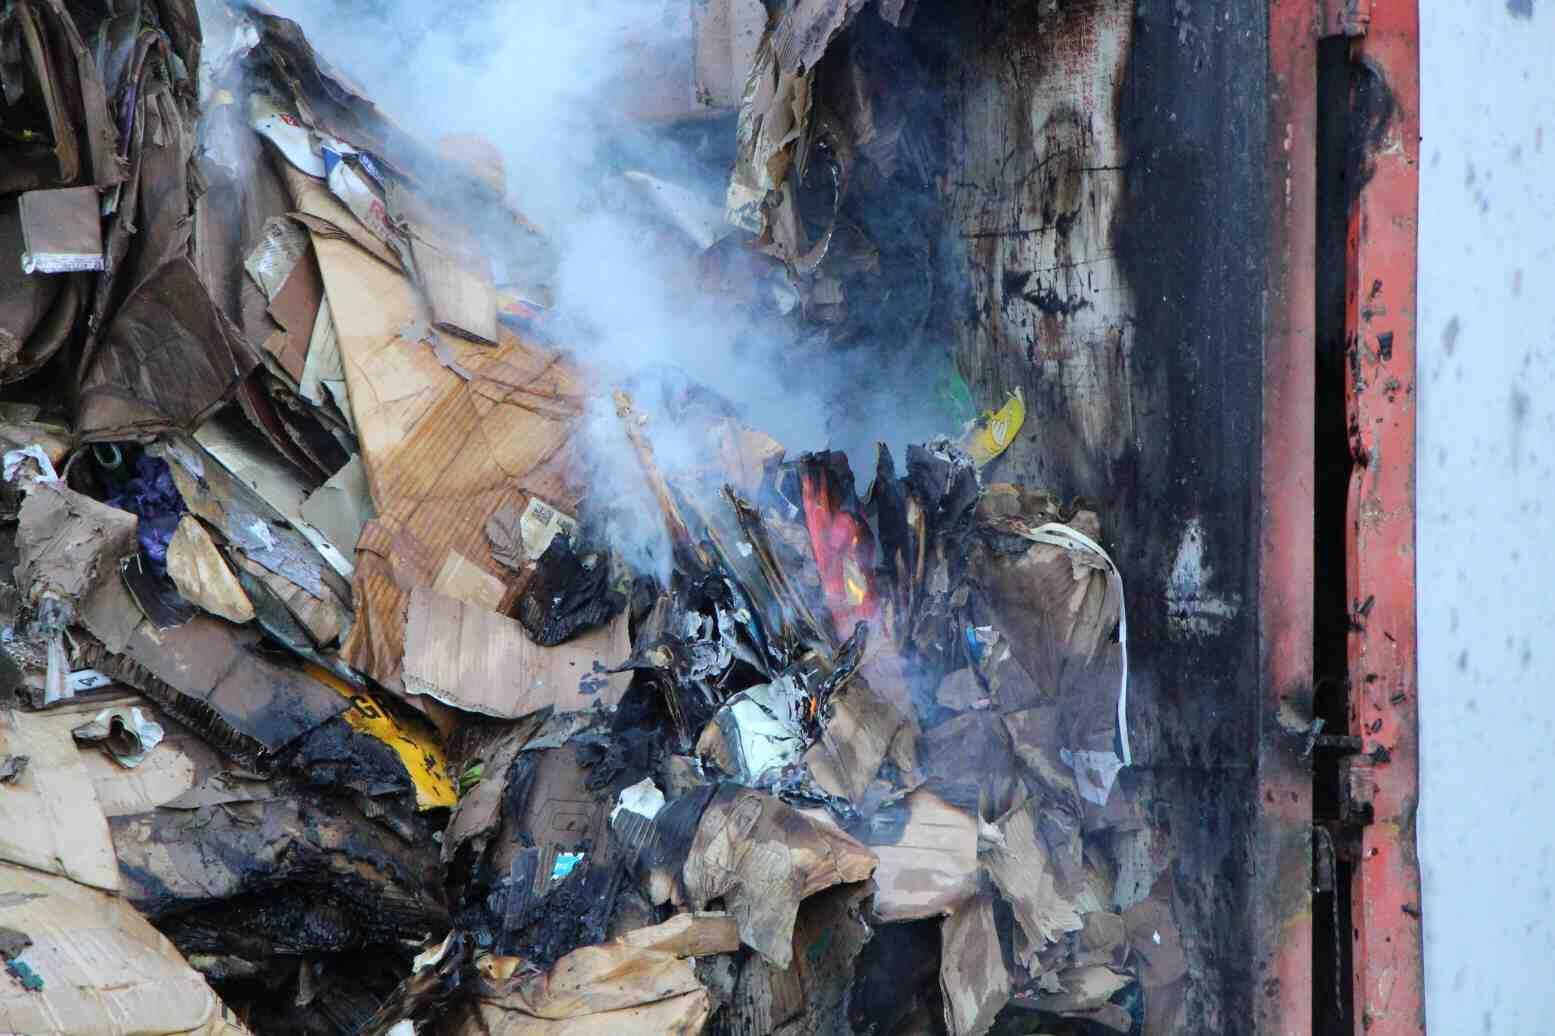 Branden in recyclinginstallaties veroorzaakt door nalatigheid: Deskundige